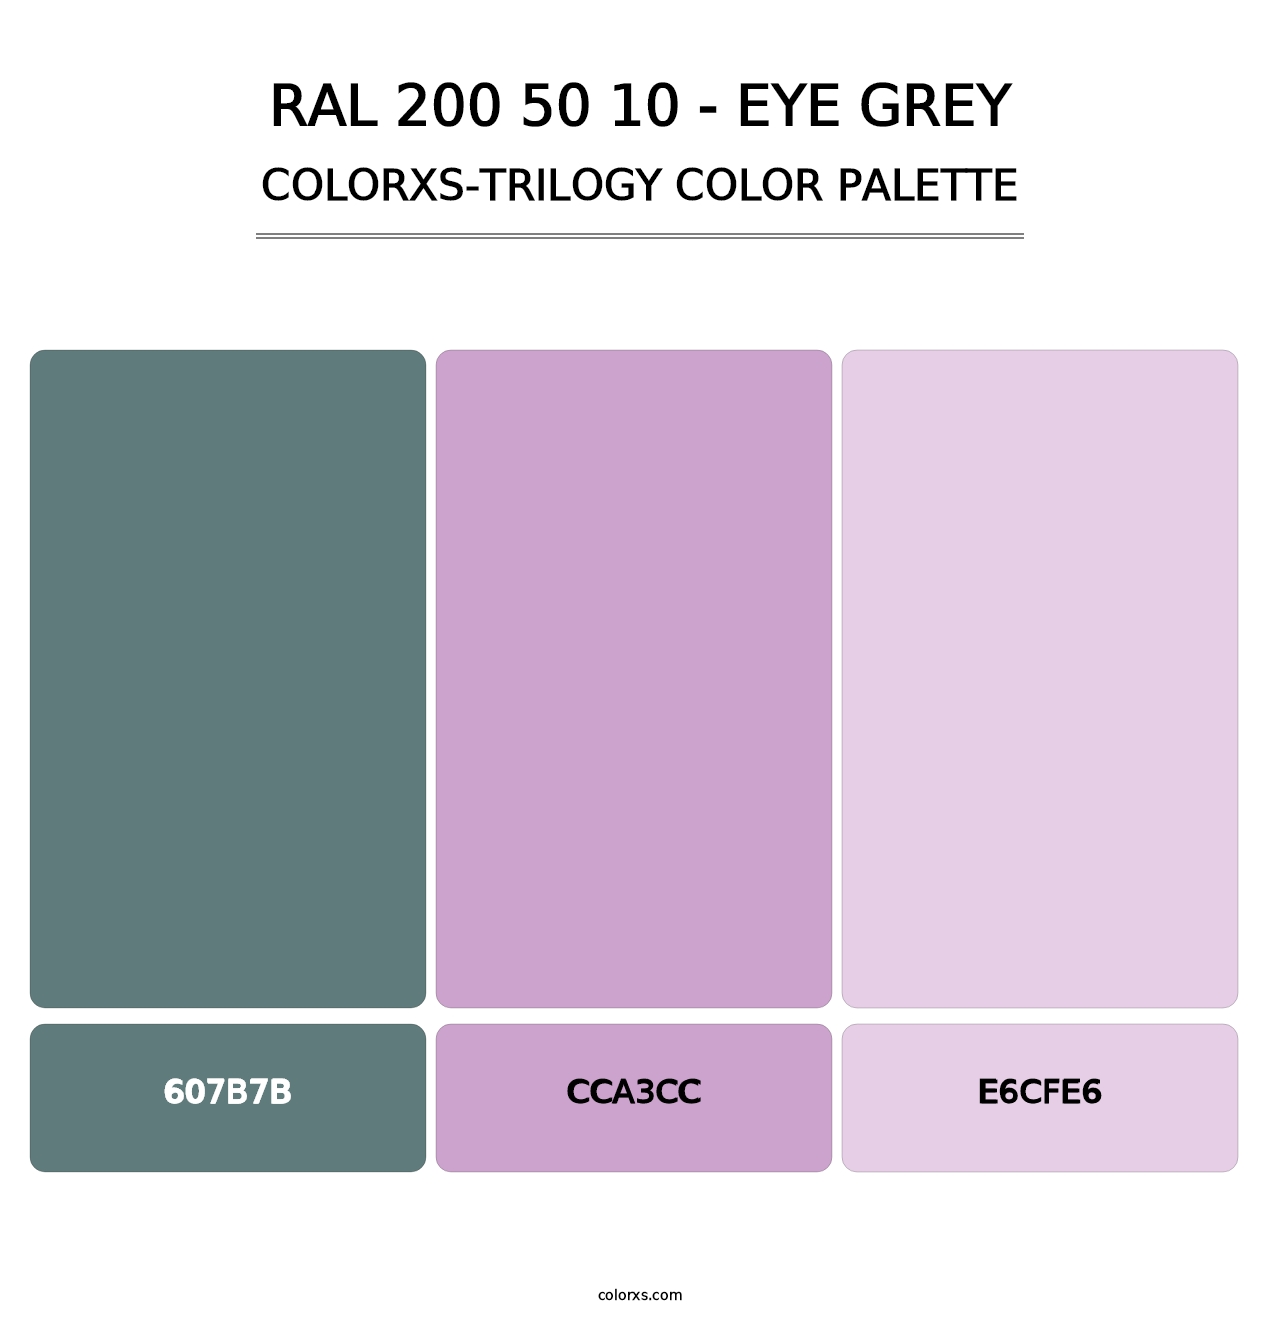 RAL 200 50 10 - Eye Grey - Colorxs Trilogy Palette